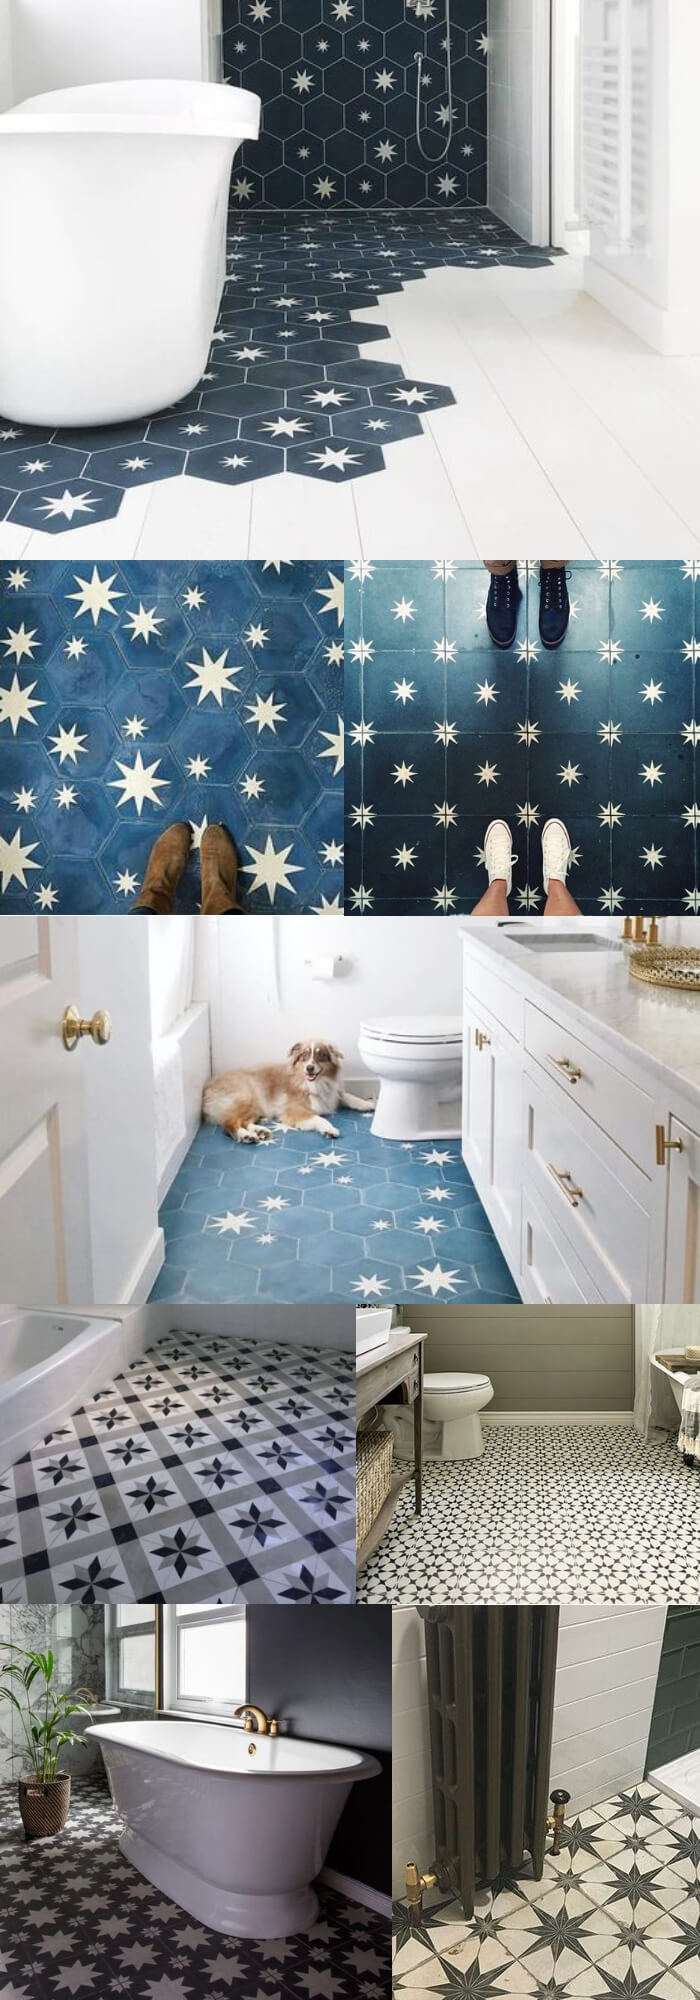 Stars bathroom floor tile ideas